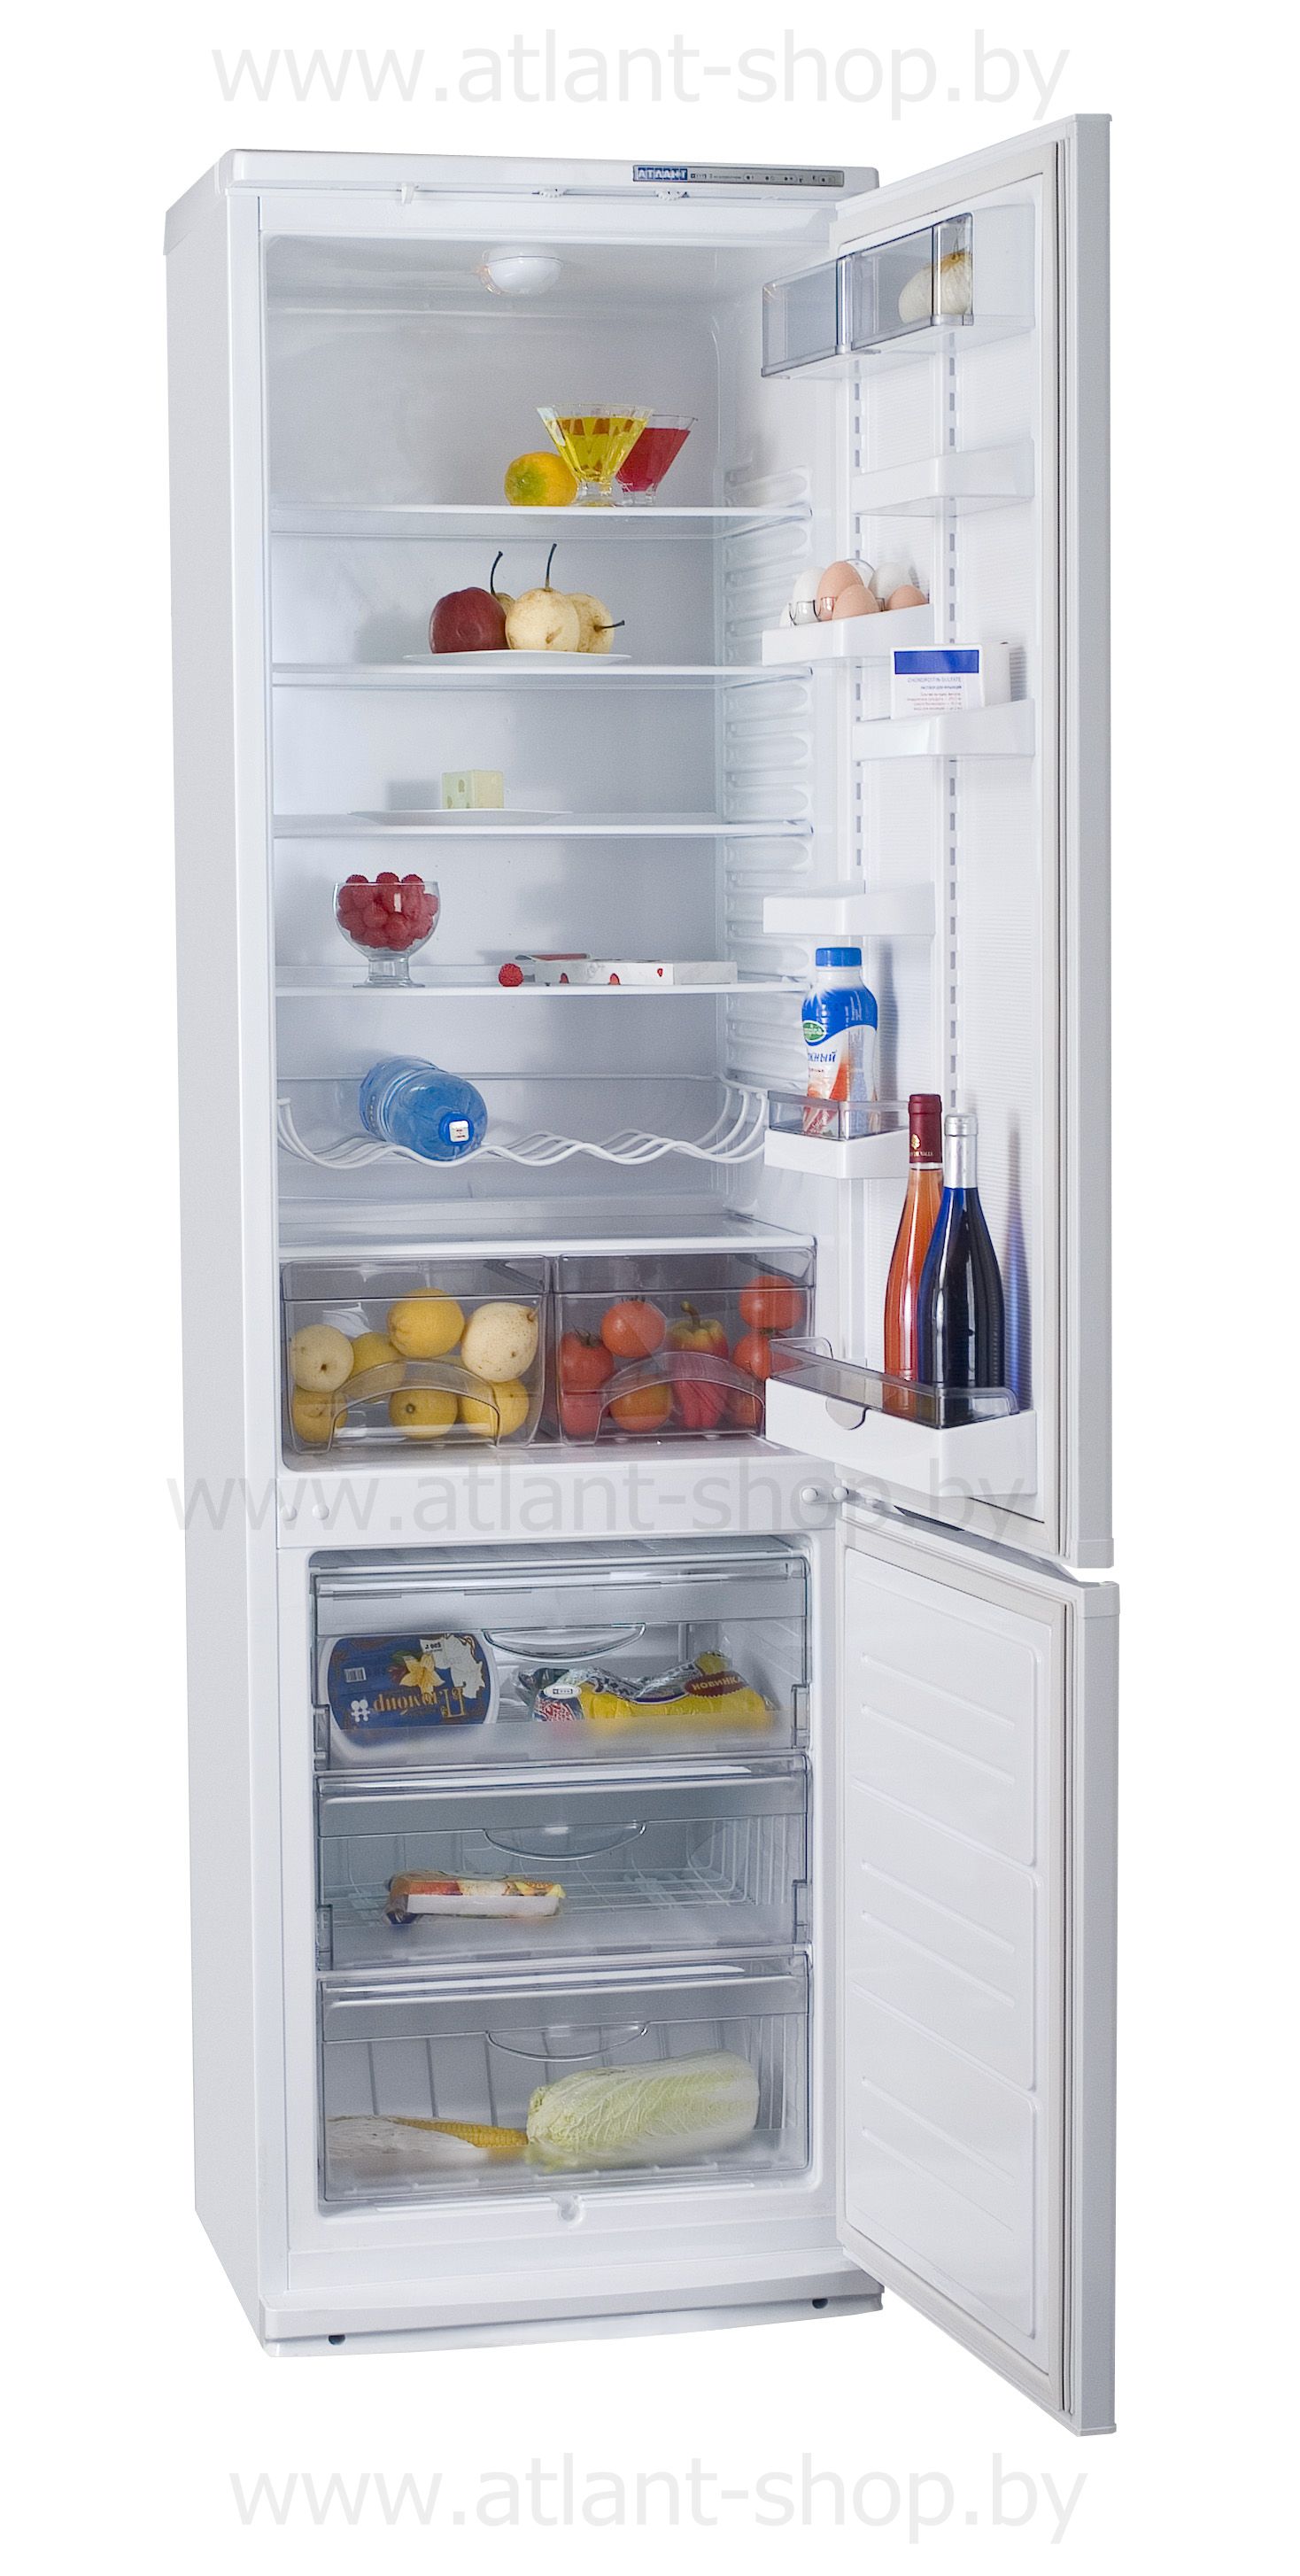 Инструкция холодильник атлант двухкомпрессорный